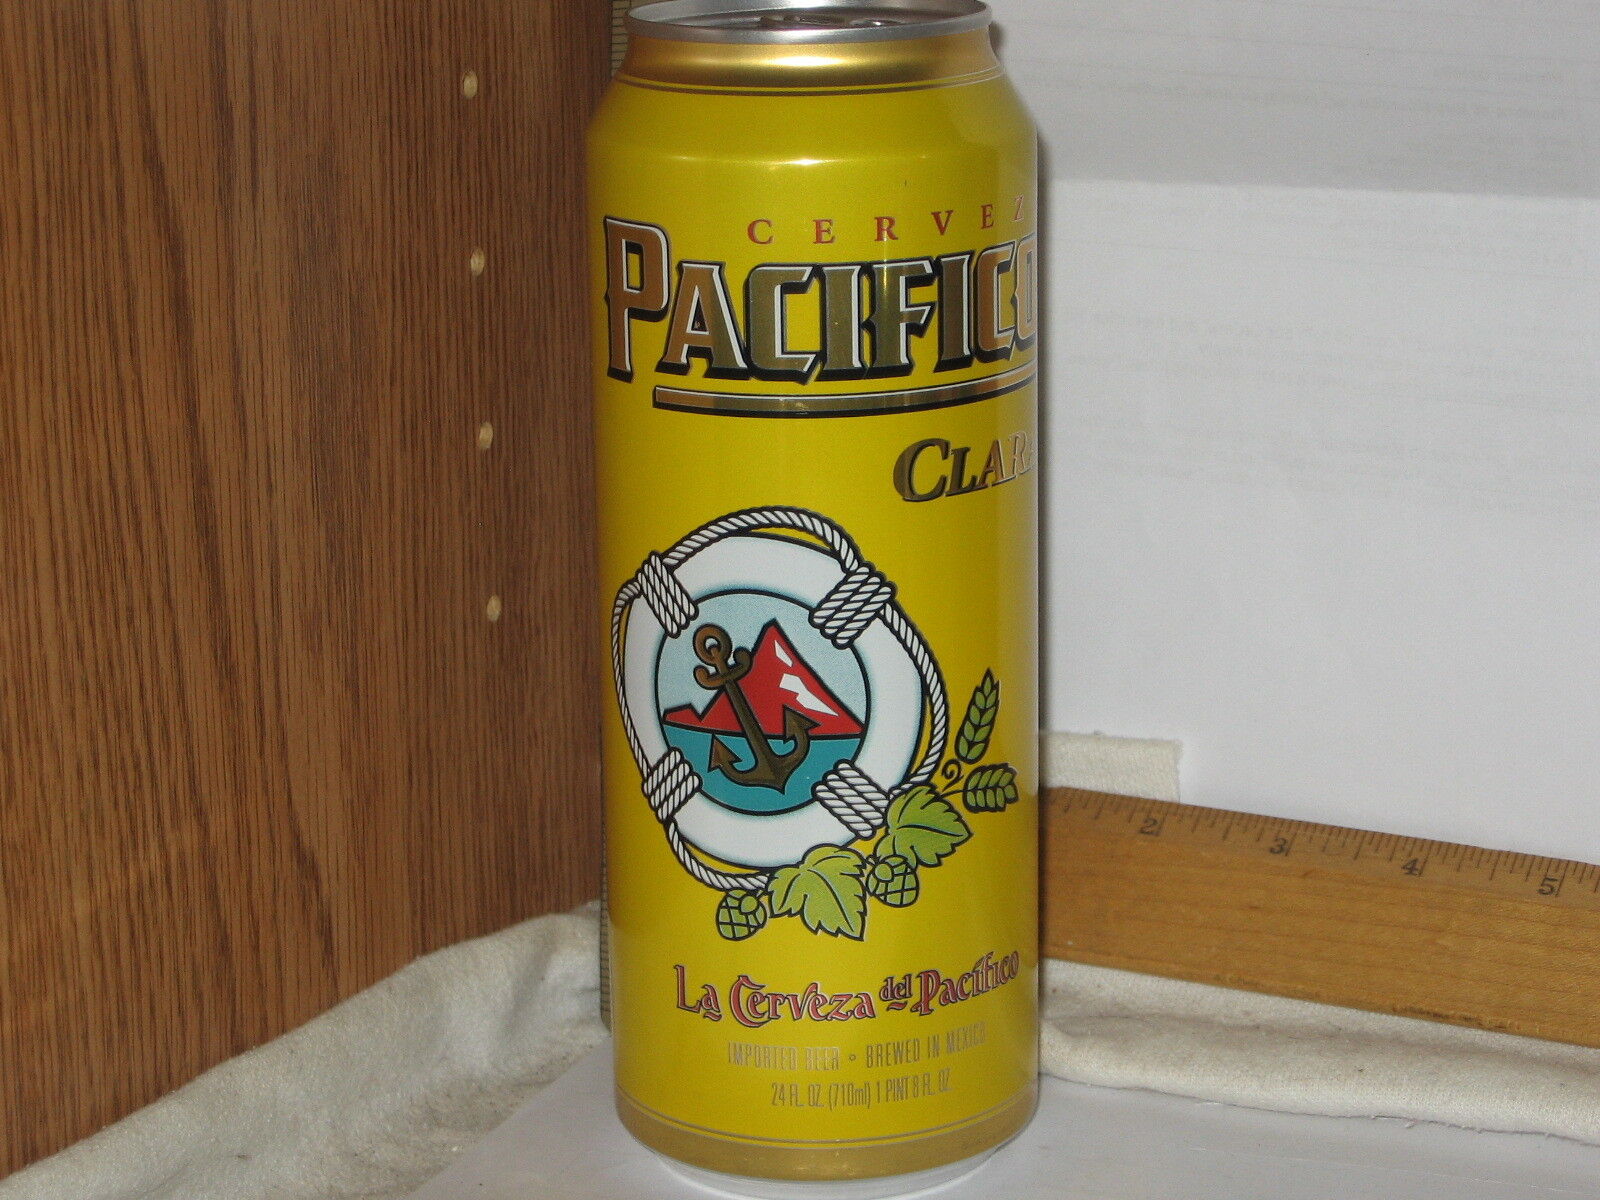 Cerveza Pacifico Clara - La Cerveza del Pacifico Brewed in Mexico 24 OZ beer can